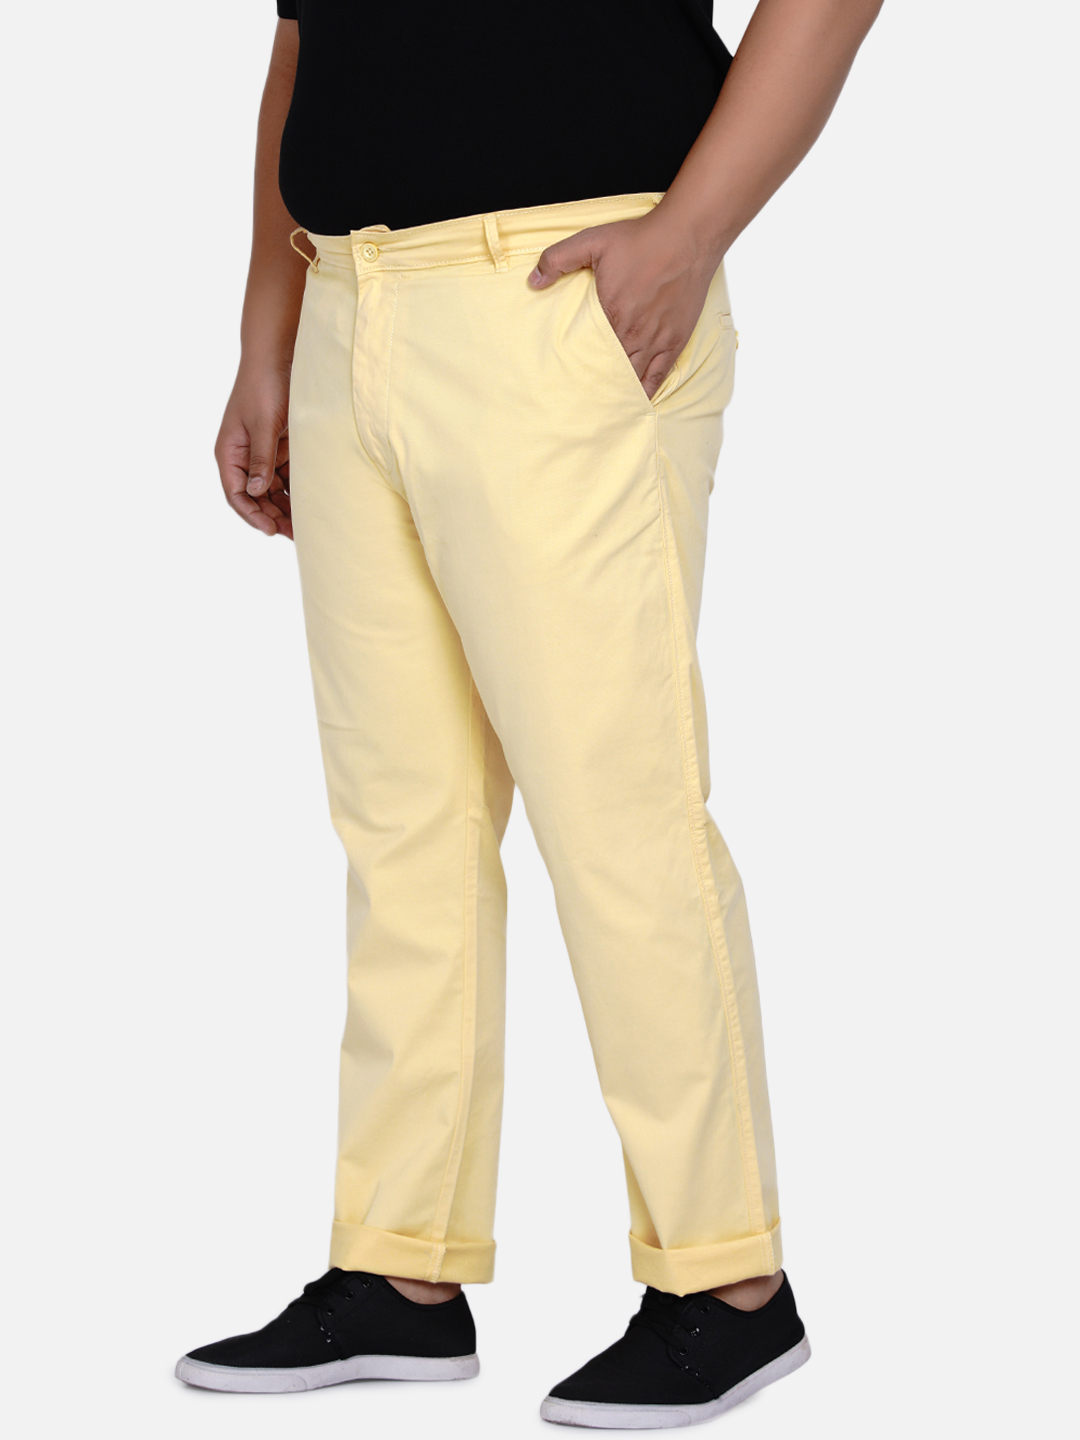 bottomwear/trousers/JPTR2161O/jptr2161o-3.jpg